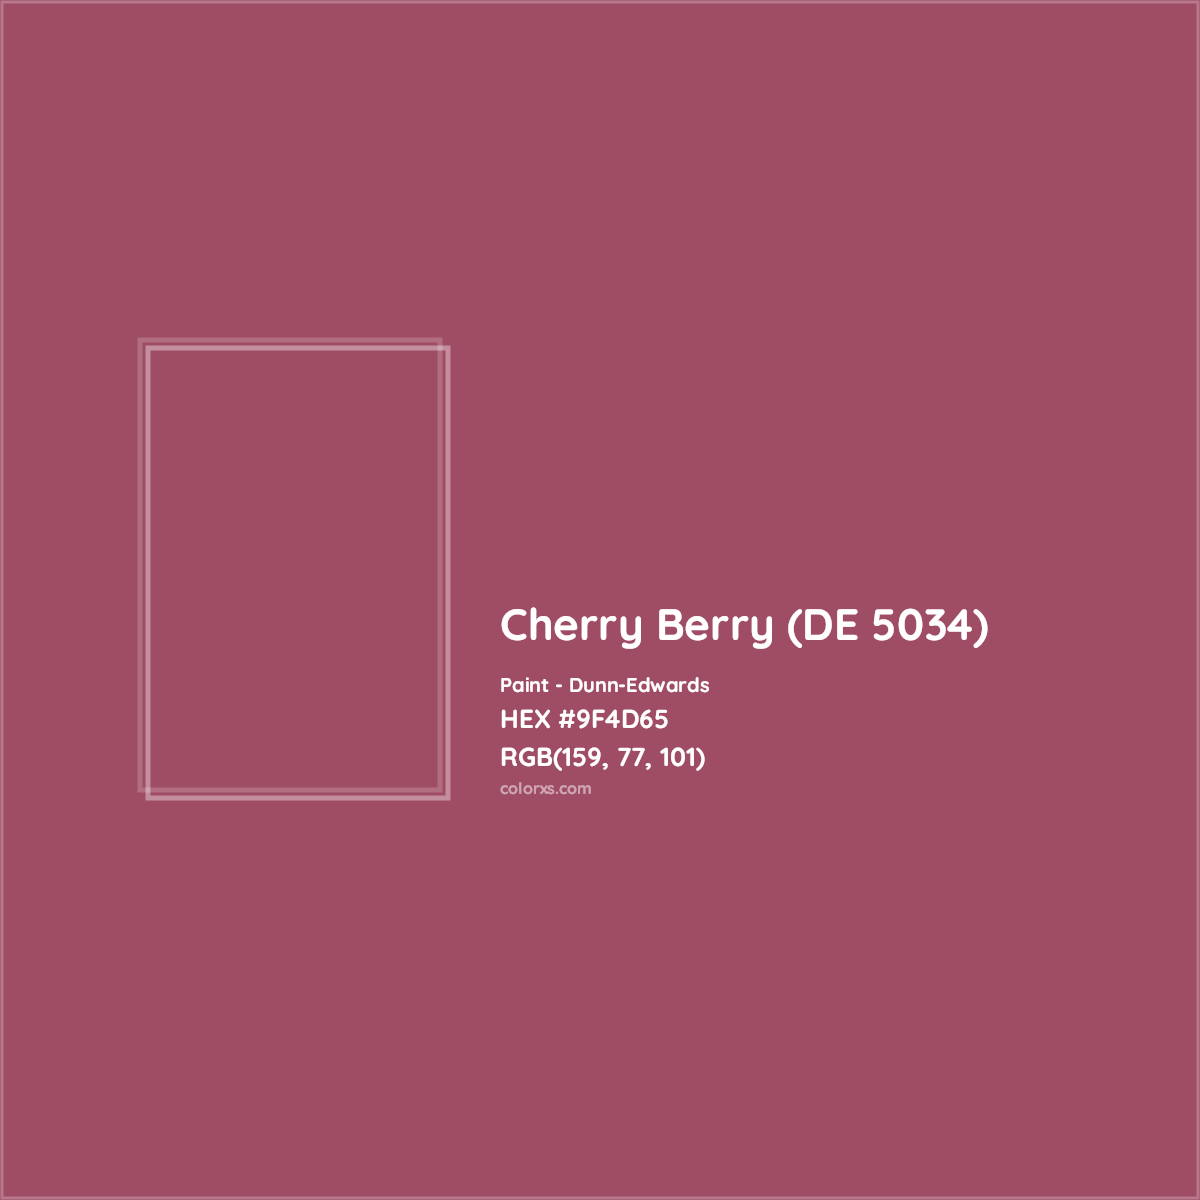 HEX #9F4D65 Cherry Berry (DE 5034) Paint Dunn-Edwards - Color Code